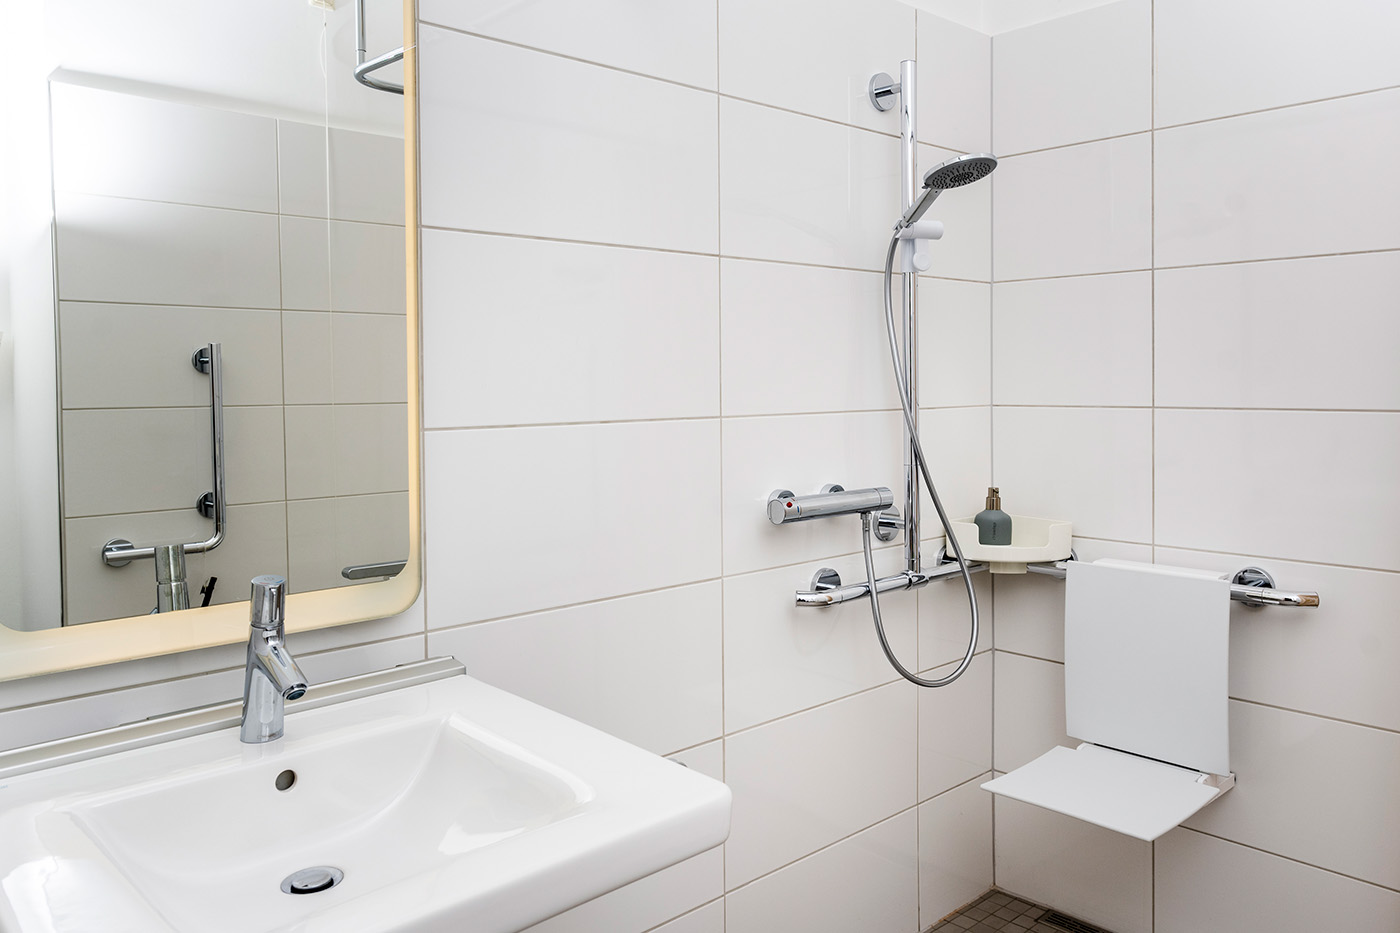 Barrierefreies Bad mit bodengleicher Dusche, deren Halterung als stabiler Haltegriff genutzt werden kann, daran montiertem Duschklappsitz und mit unterfahrbarem Waschtisch